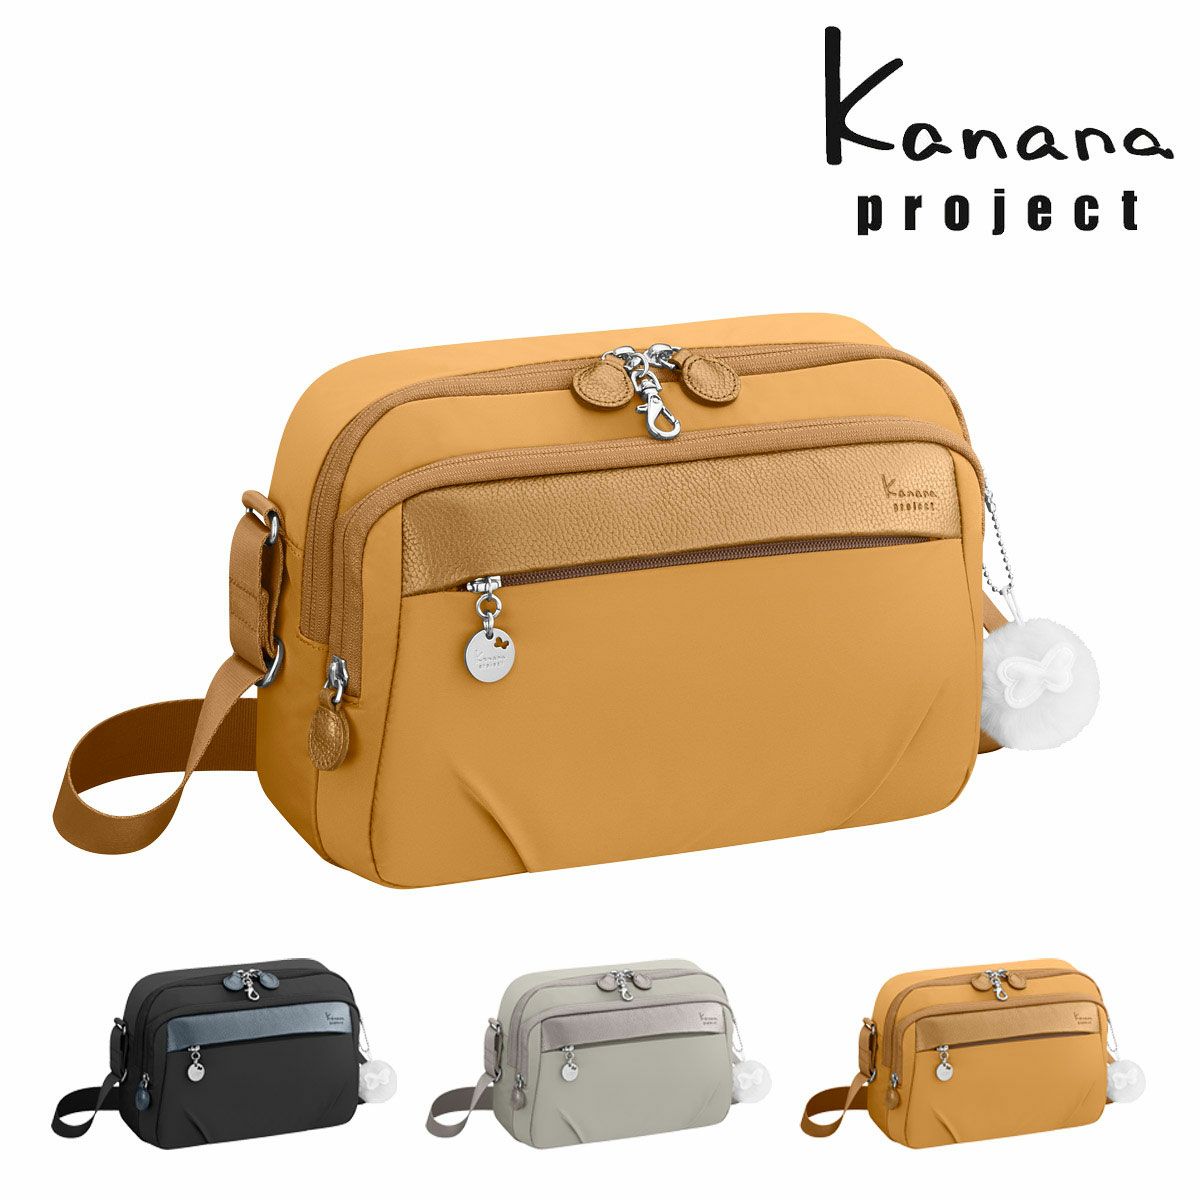 カナナプロジェクト ショルダーバッグ 軽量 レディース 67642 PJ1-4th Kanana project | ショルダーバッグ |  サックスバー SAC'S BAR公式サイト